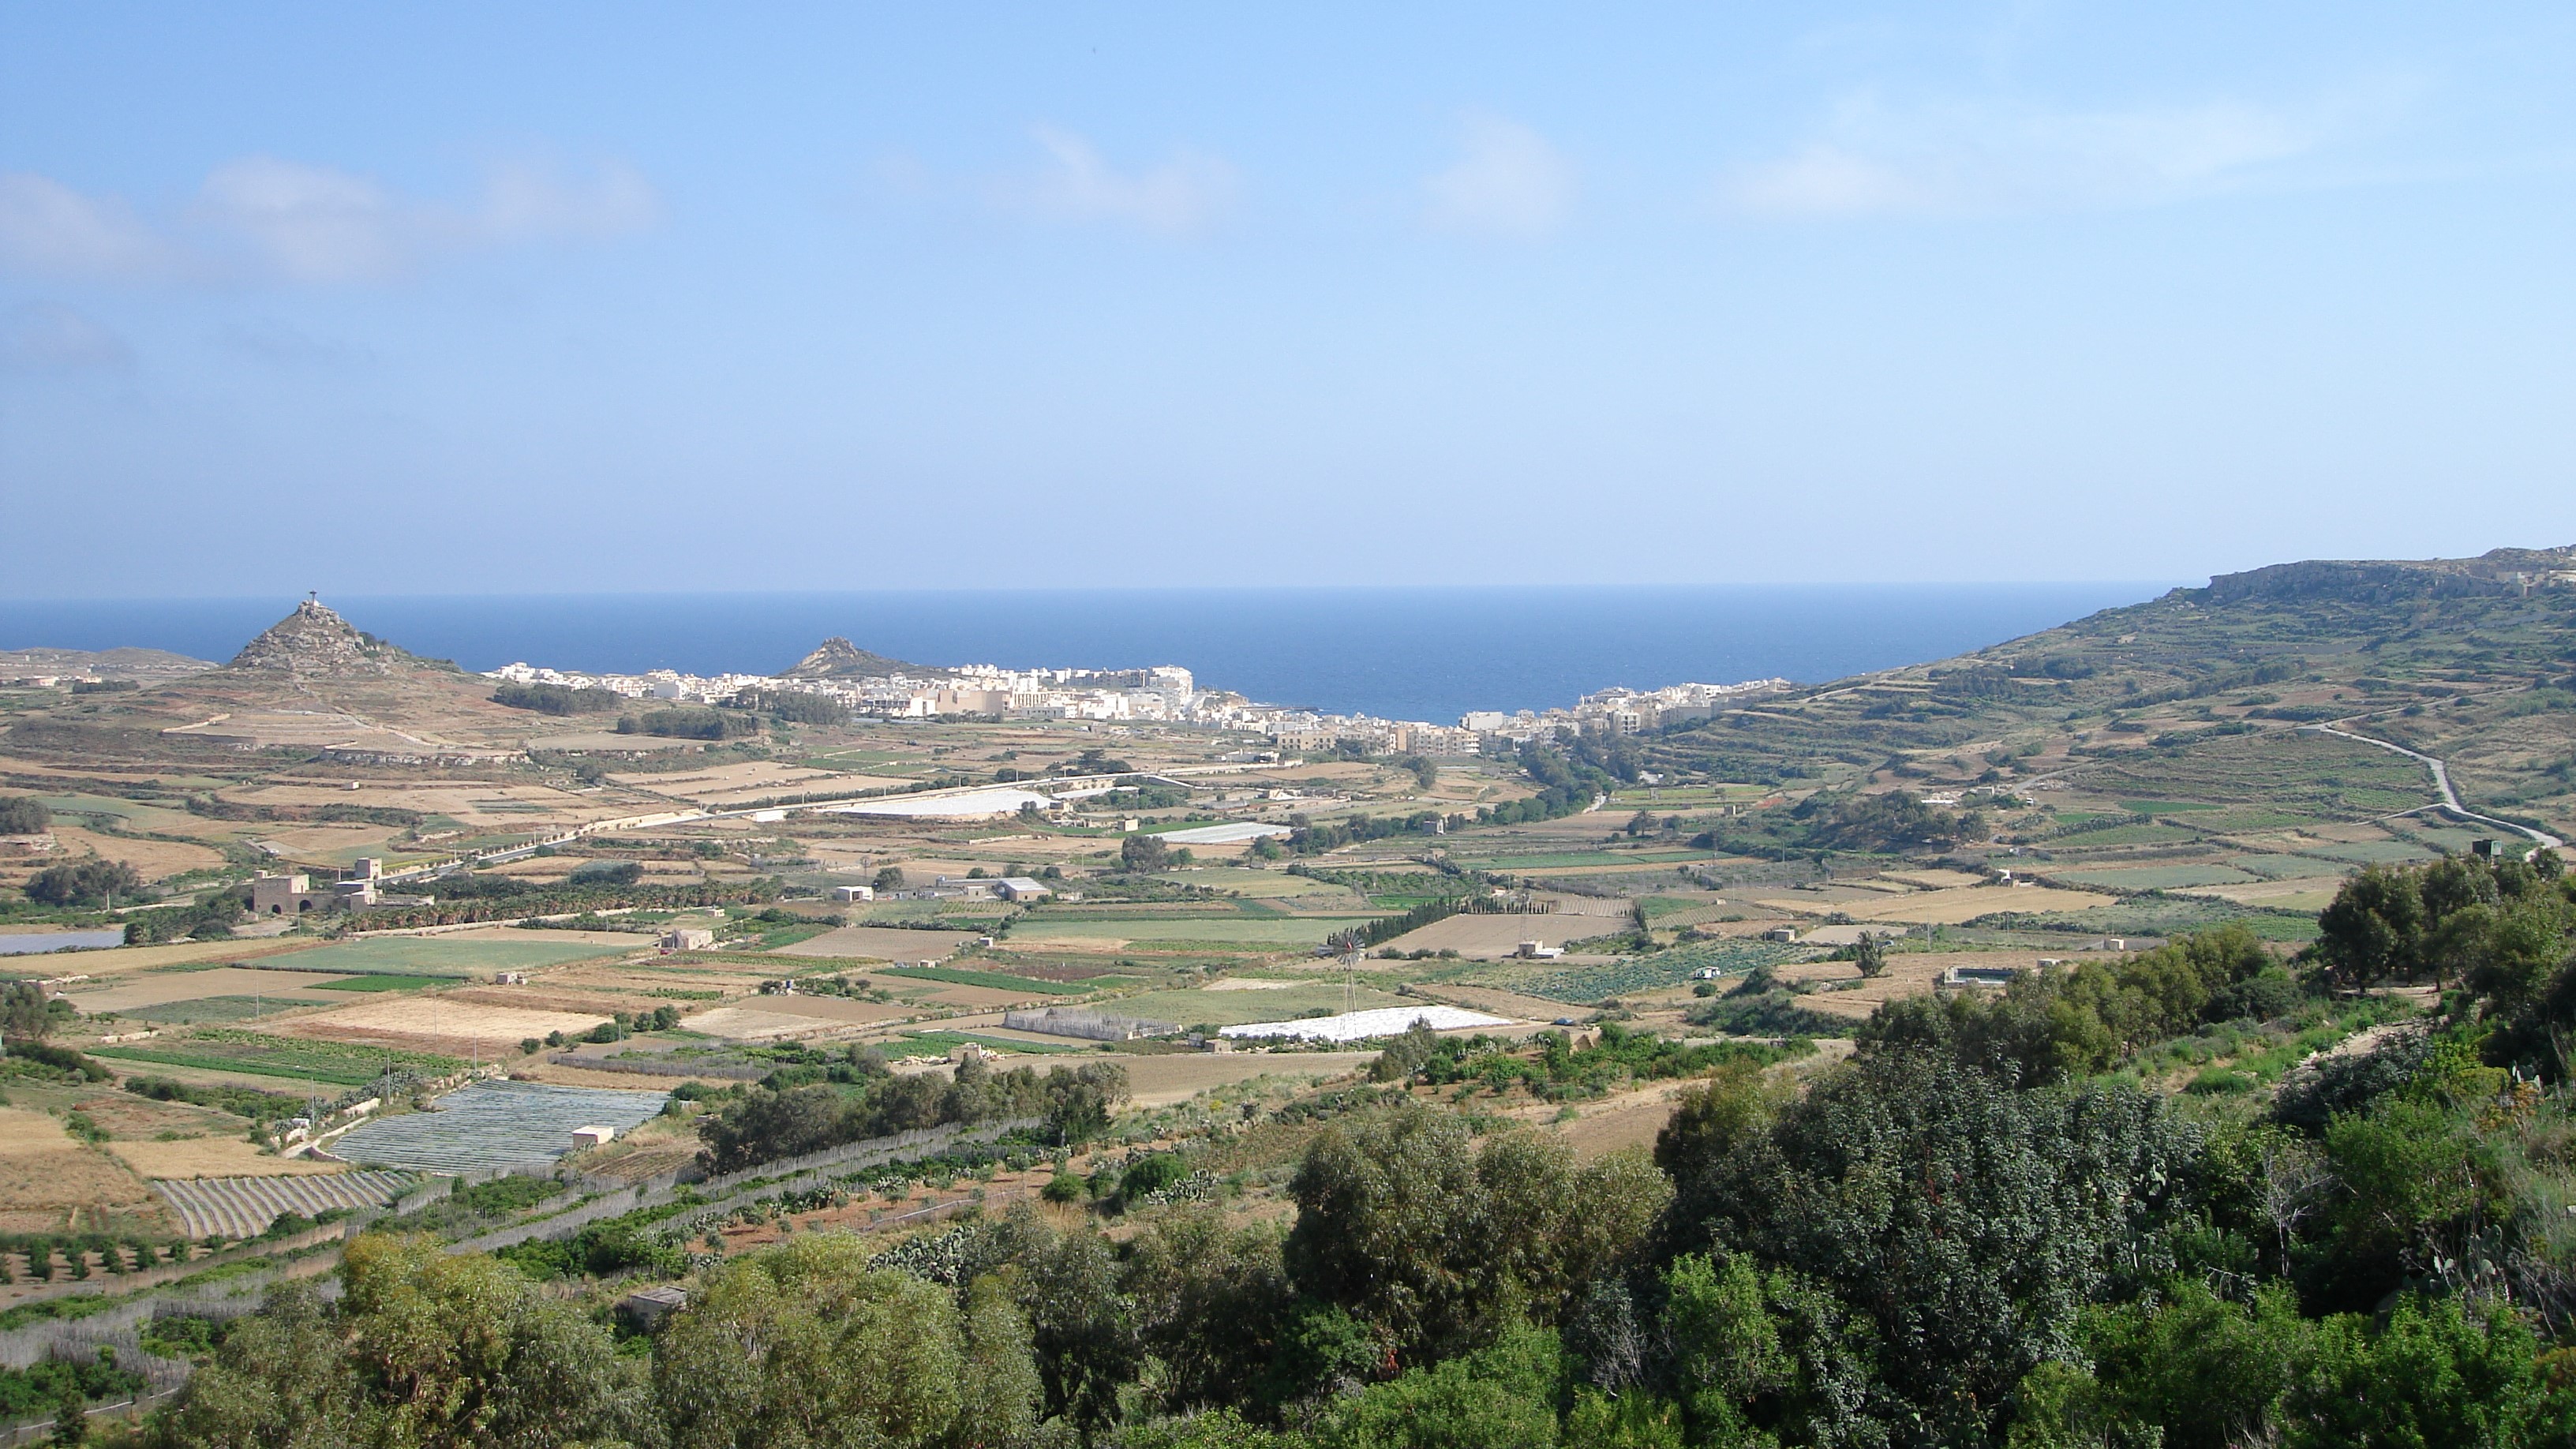 Typical farming landscape in Malta. 